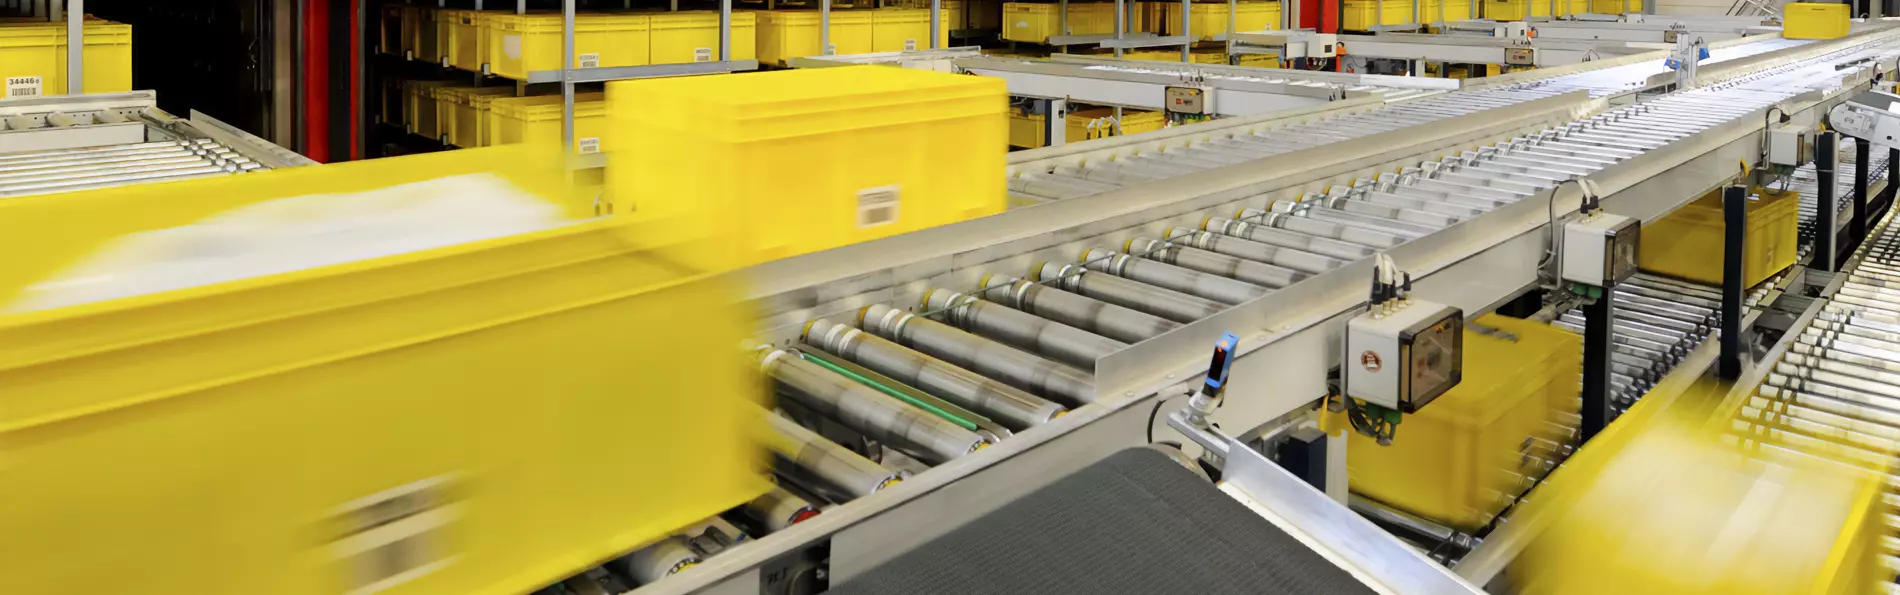 Intra-logistics conveyor system